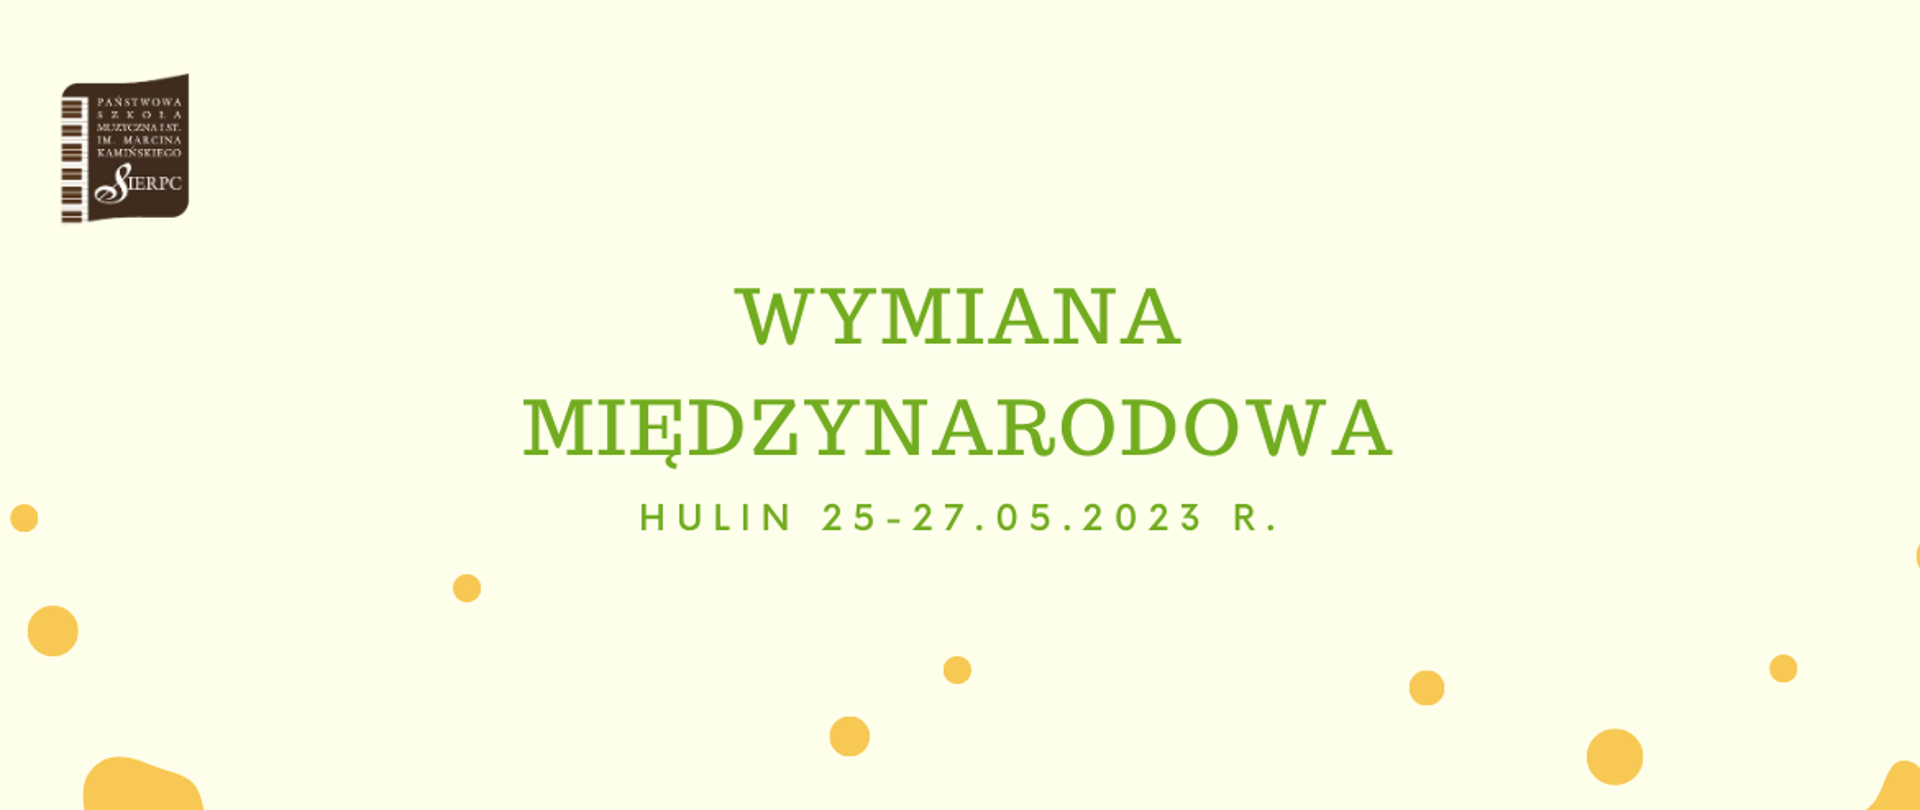 Na jasnym tle w lewym górnym rogu logo PSM I st. w Sierpcu, pośrodku tekst: Wymiana międzynarodowa Hulin 25-27.05.2023 r. Na dole strony żółte kwiaty.